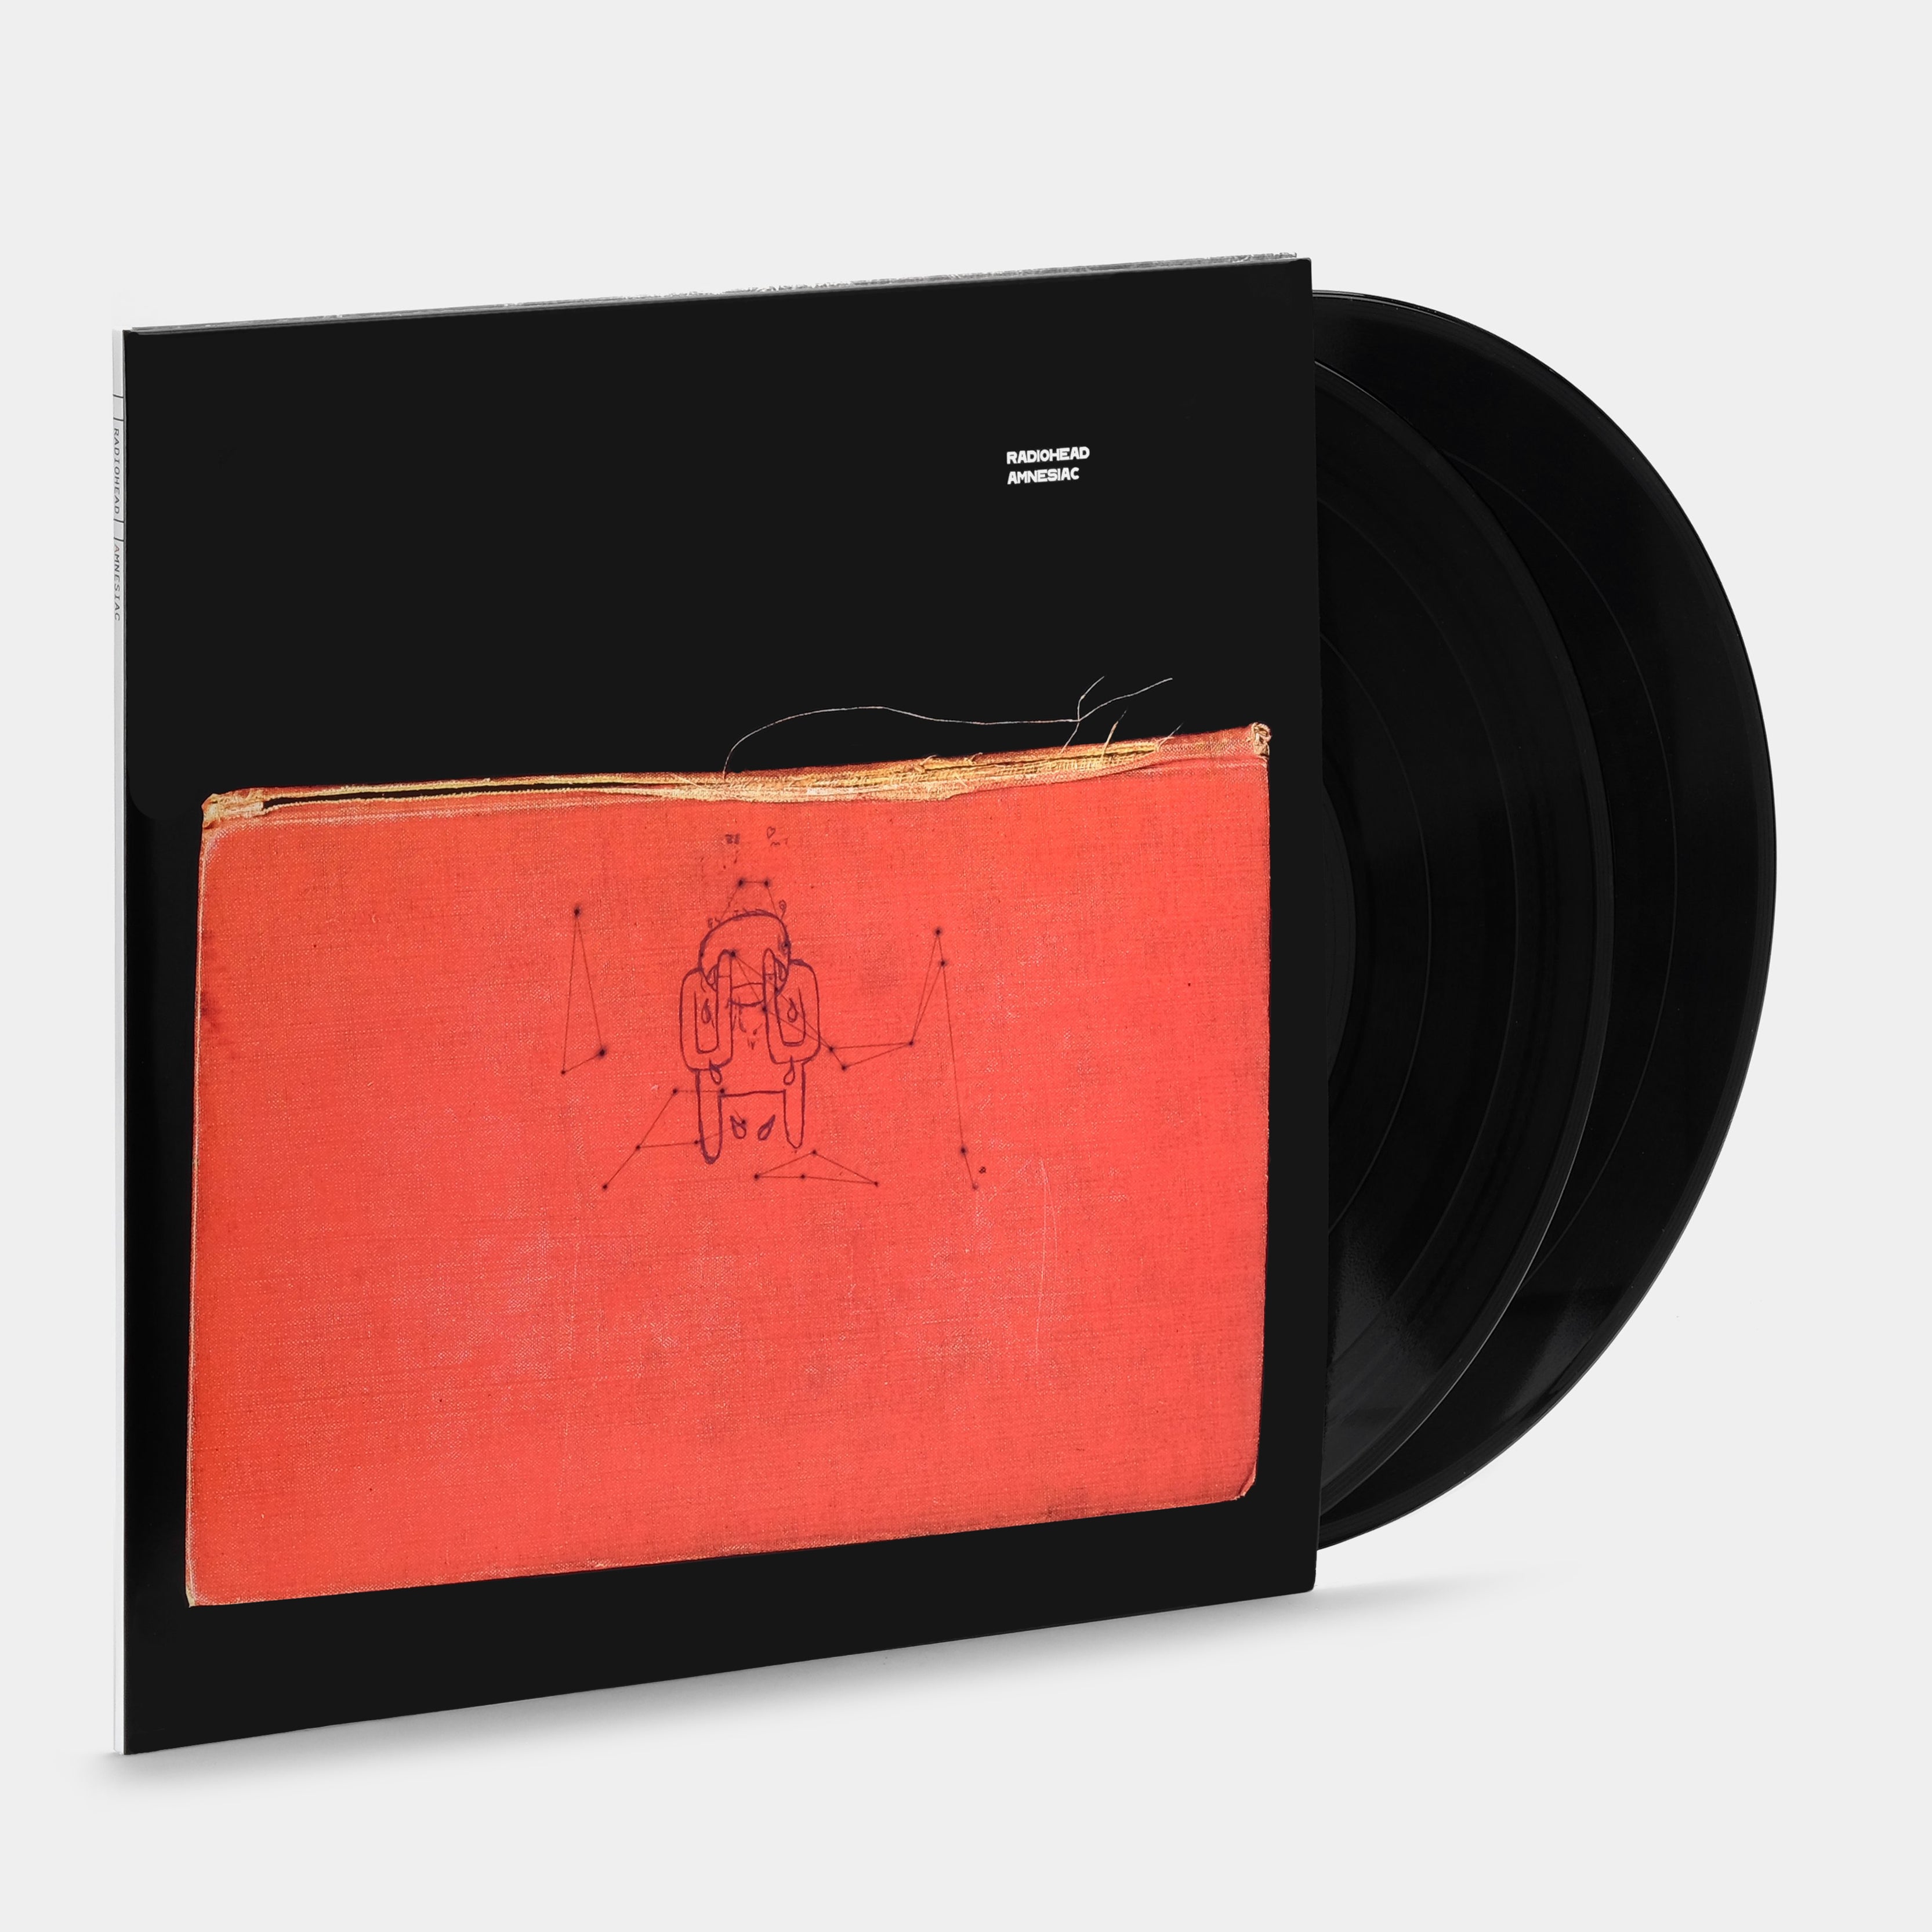 Radiohead – Kid A (Vinilo Doble 2xLP) – Jarana Records